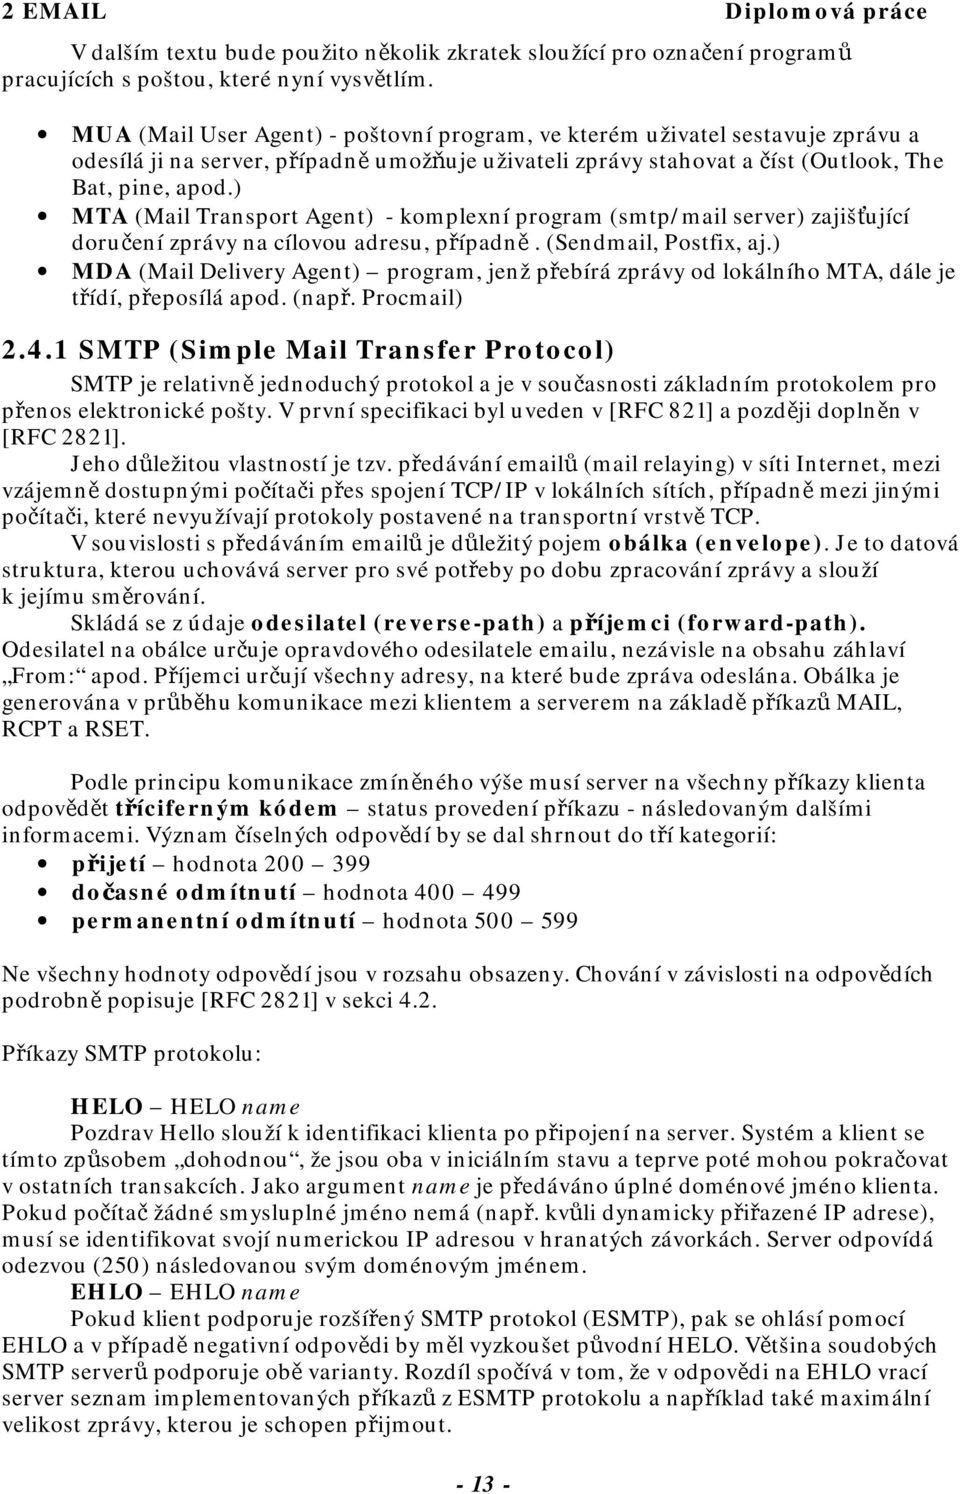 ) MTA (Mail Transport Agent) - komplexní program (smtp/mail server) zajišťující doručení zprávy na cílovou adresu, případně. (Sendmail, Postfix, aj.